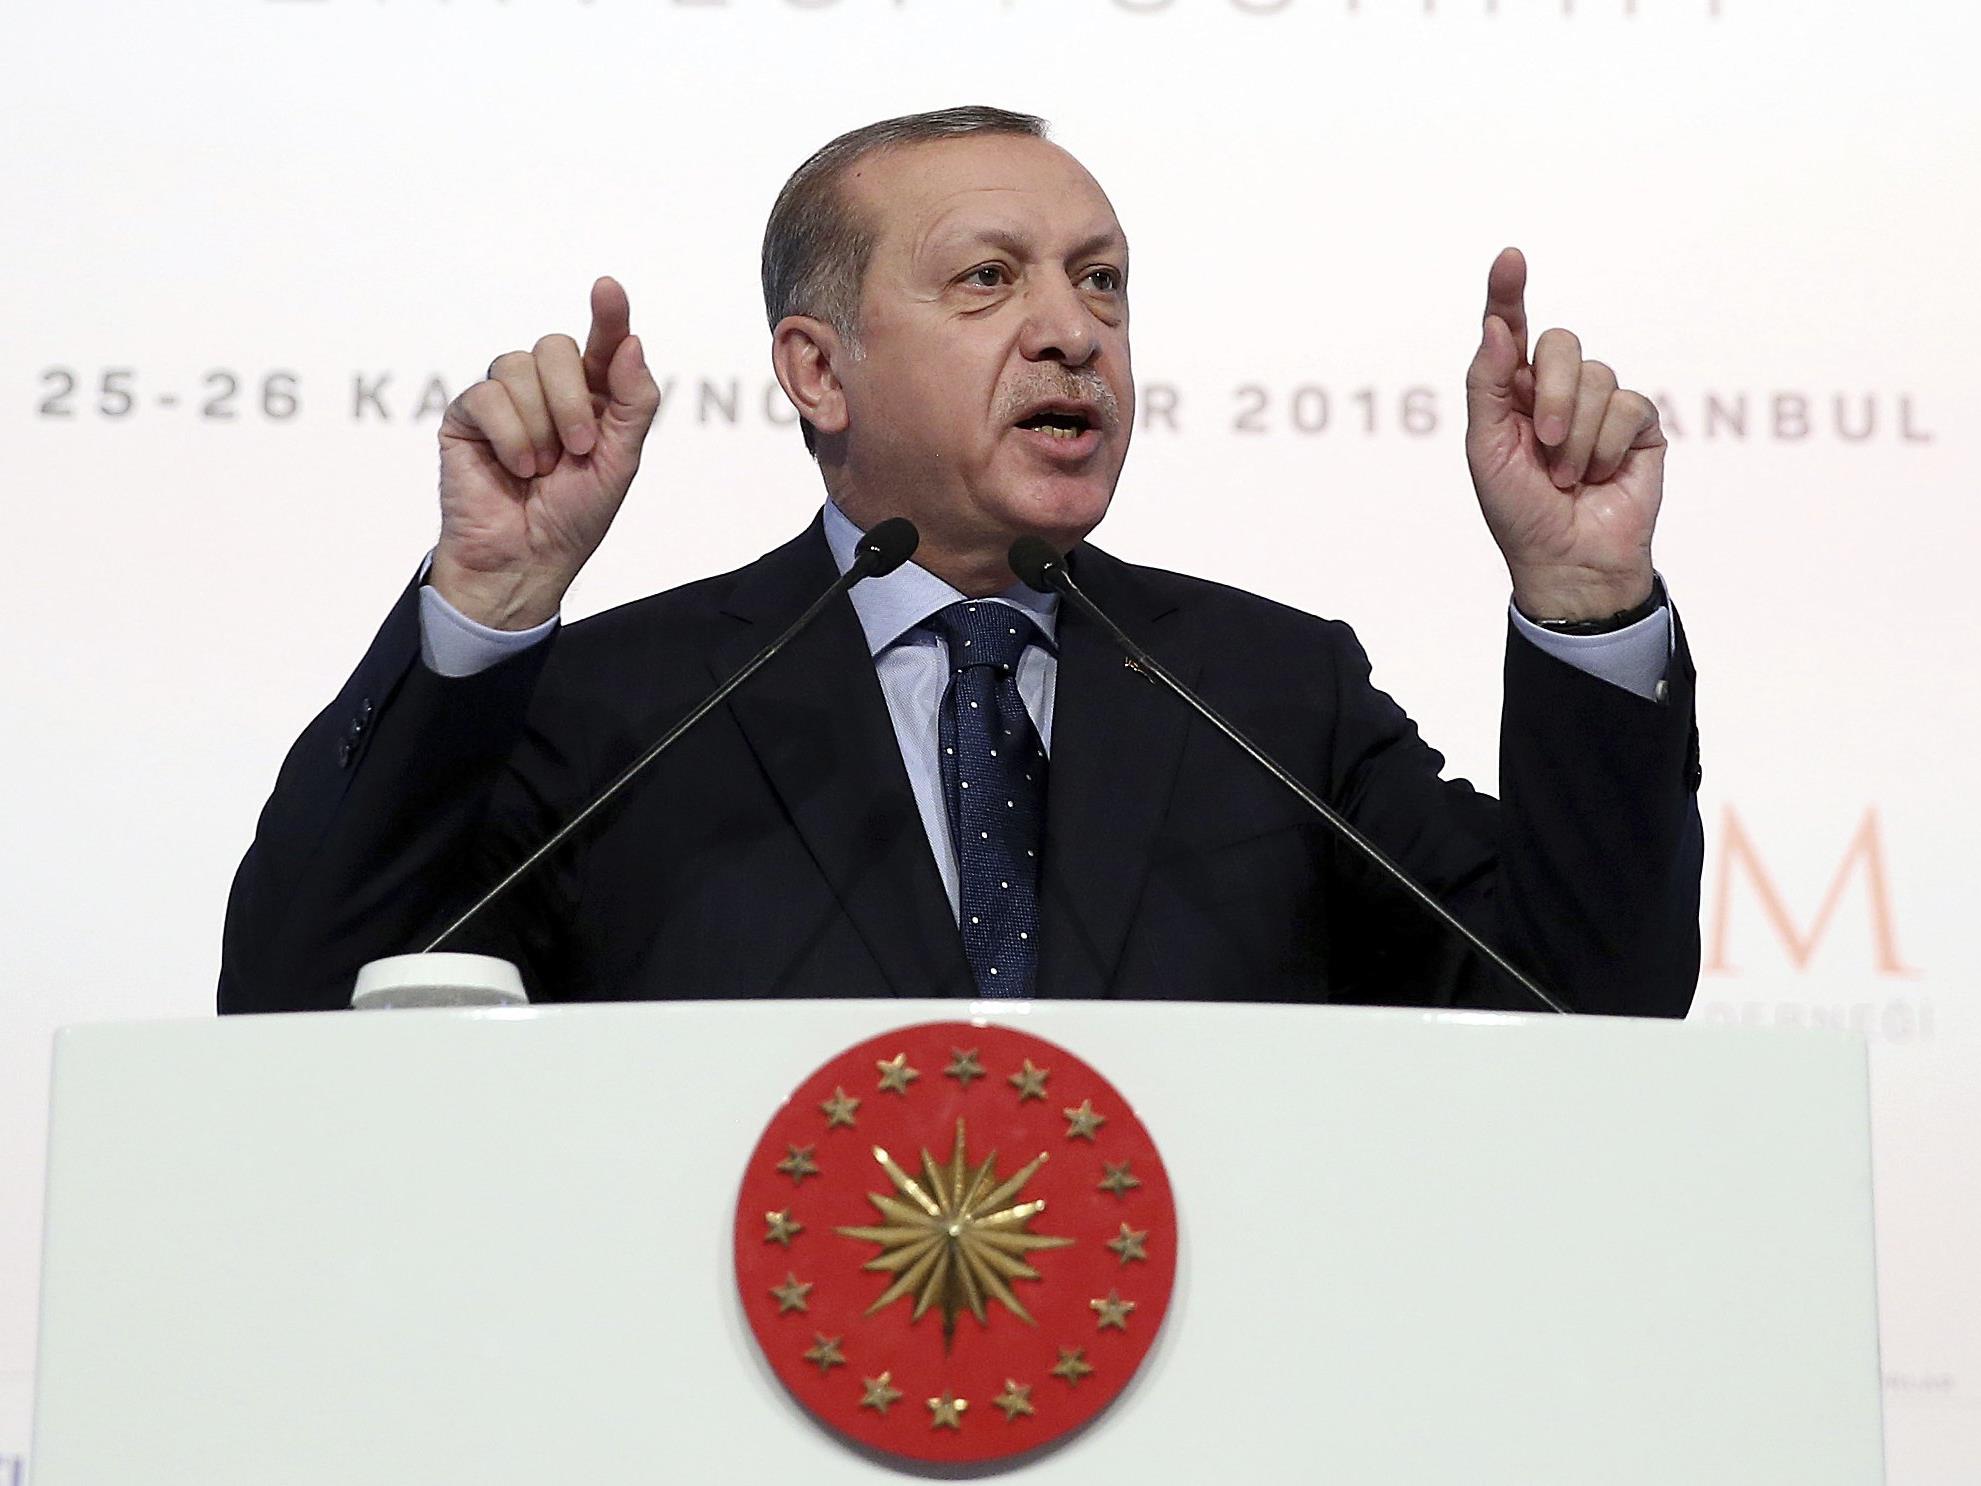 Türkischer Präsident droht EU mit Grenzöffnung für Flüchtlinge.